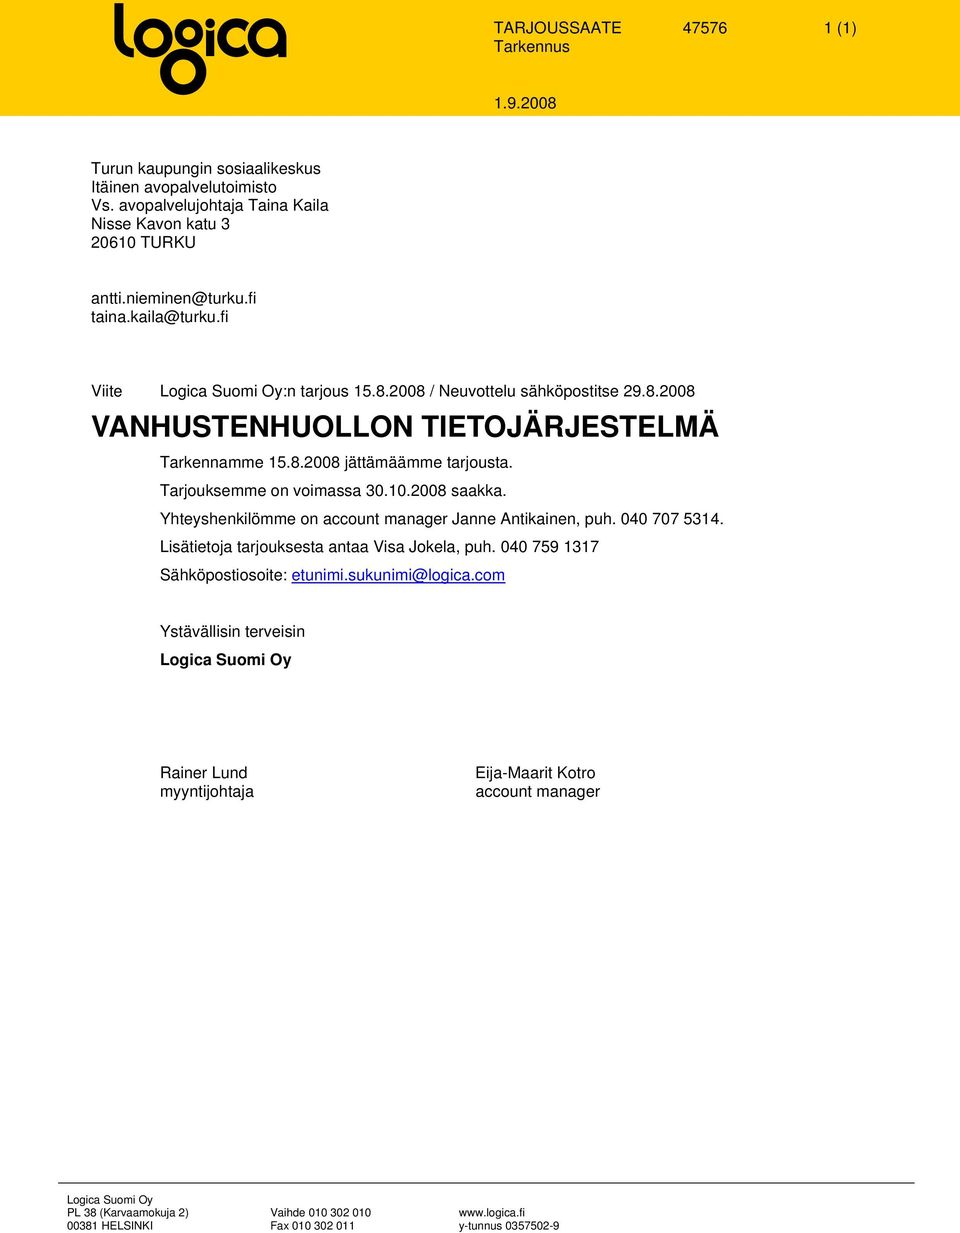 2008 saakka. Yhteyshenkilömme n accunt manager Janne Antikainen, puh. 040 707 5314. Lisätietja tarjuksesta antaa Visa Jkela, puh. 040 759 1317 Sähköpstisite: etunimi.sukunimi@lgica.